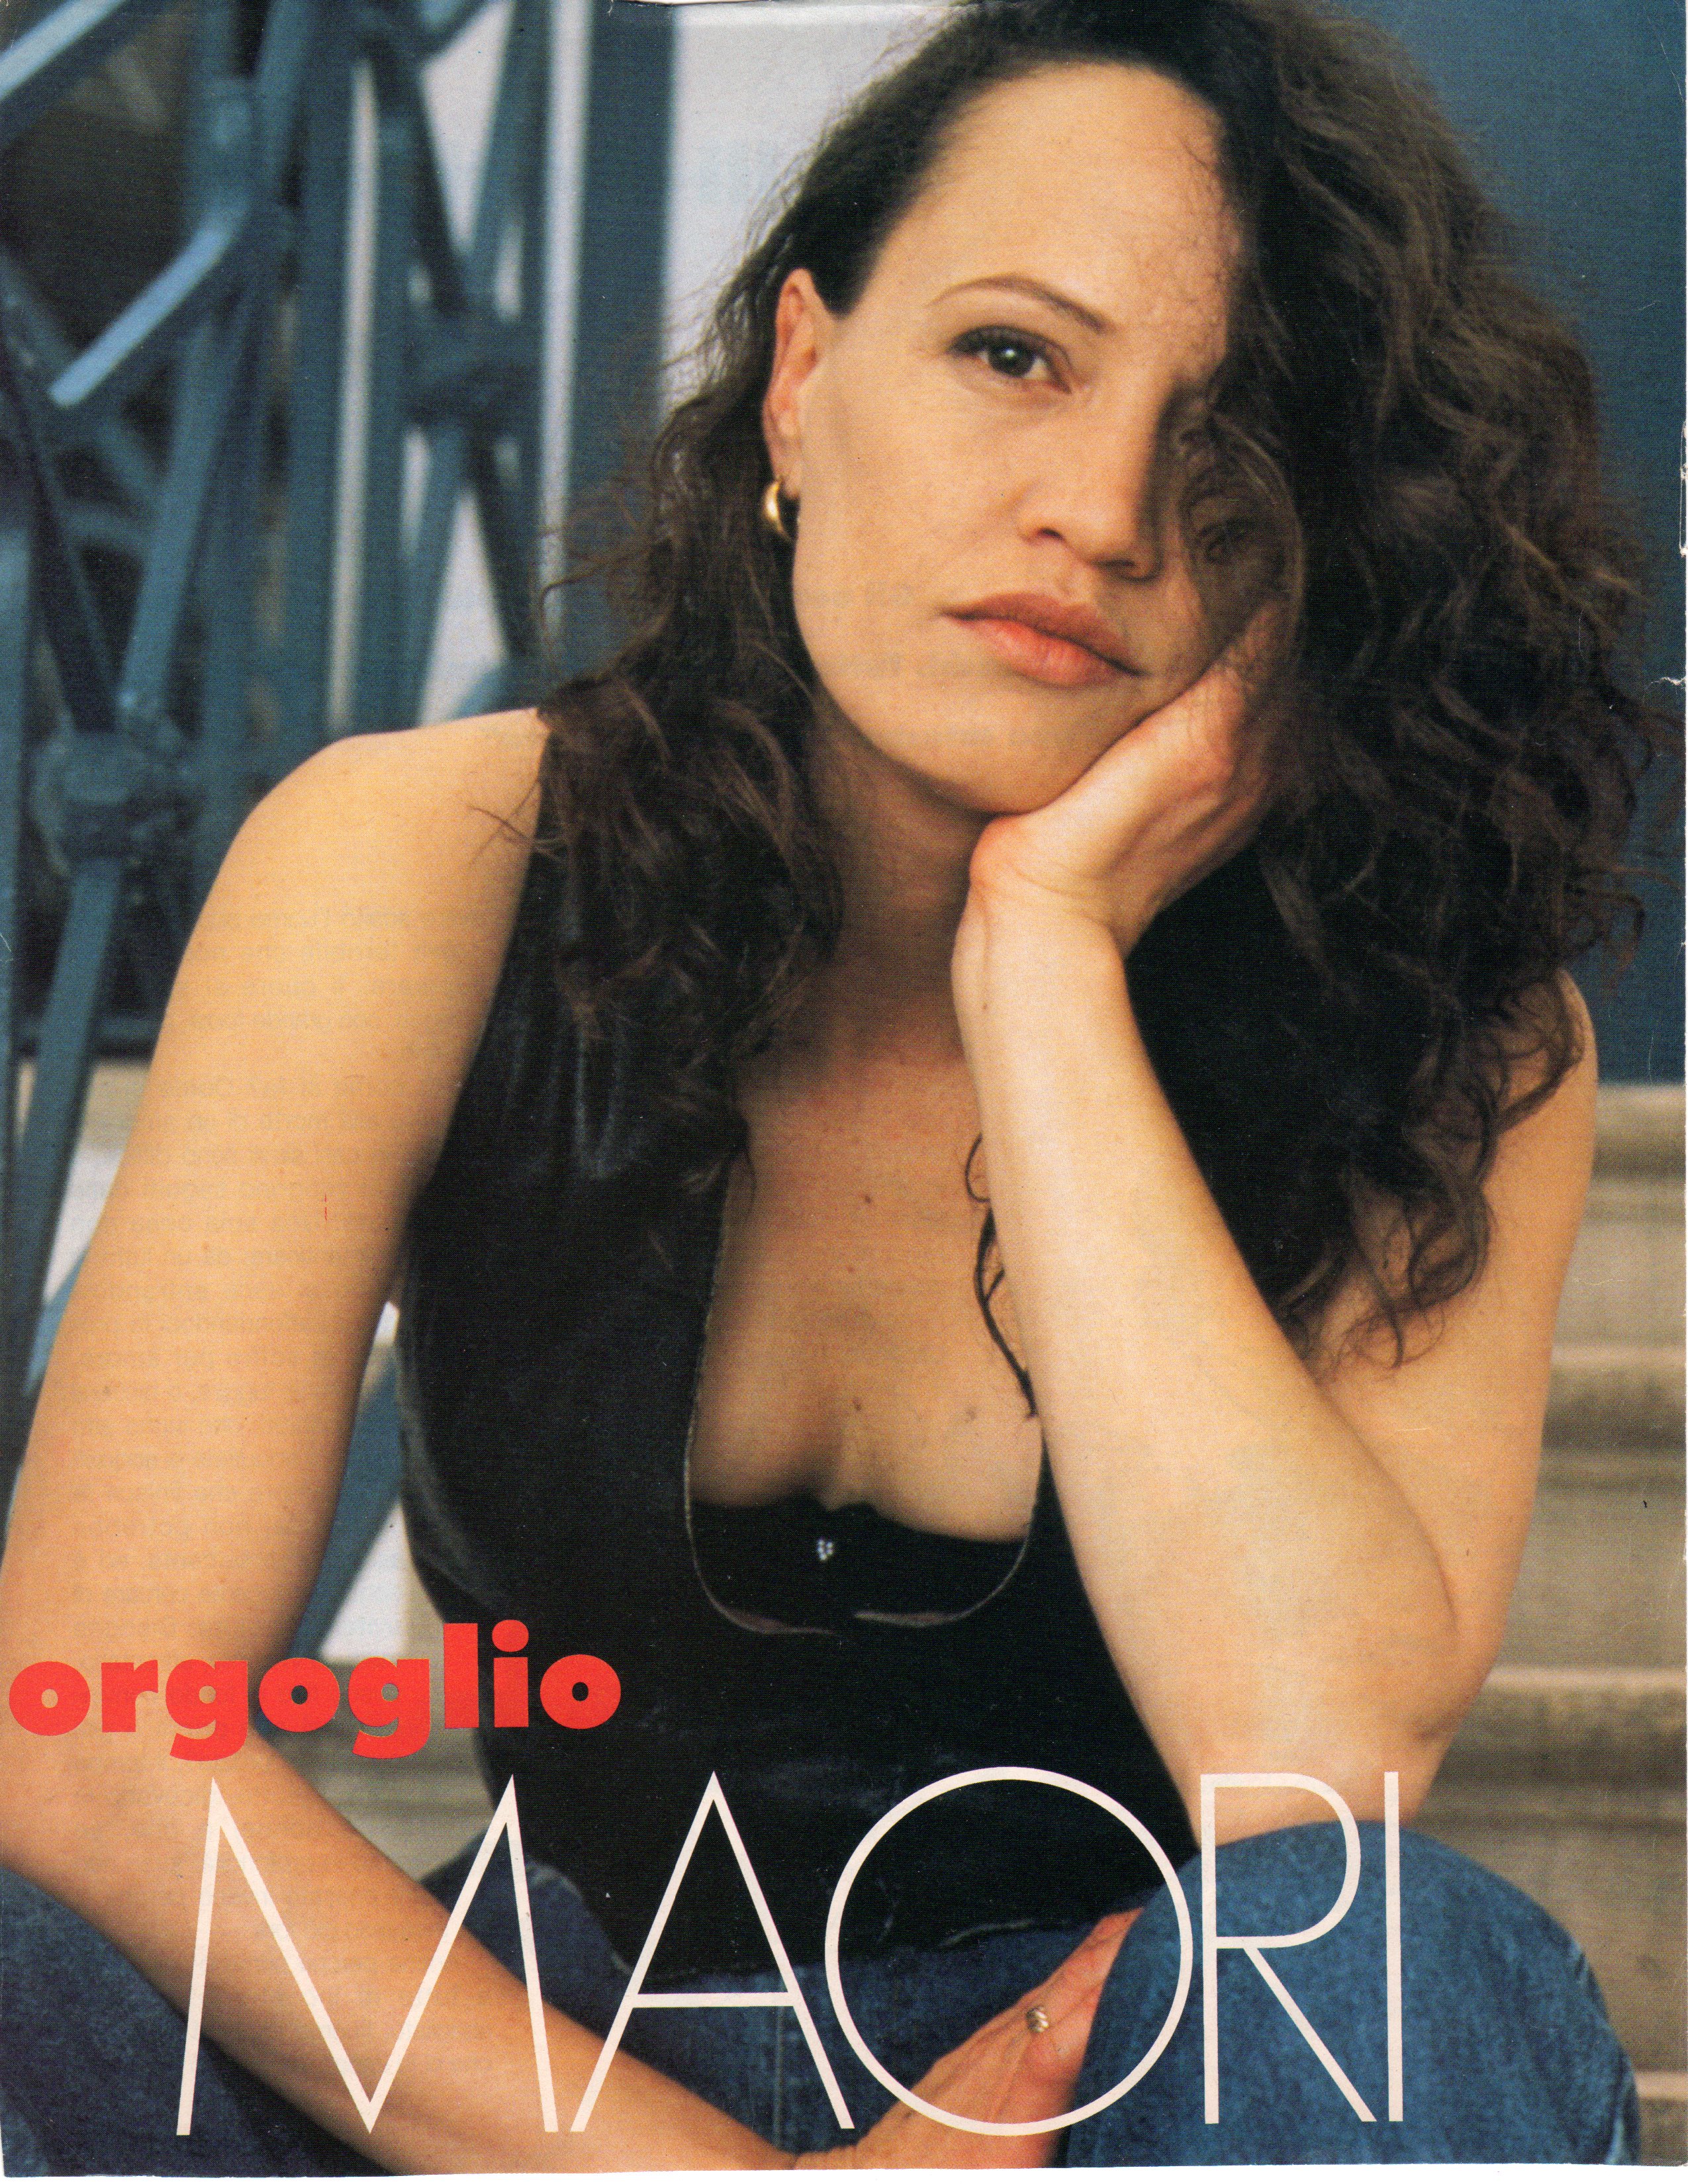 Orgogilo Magazine